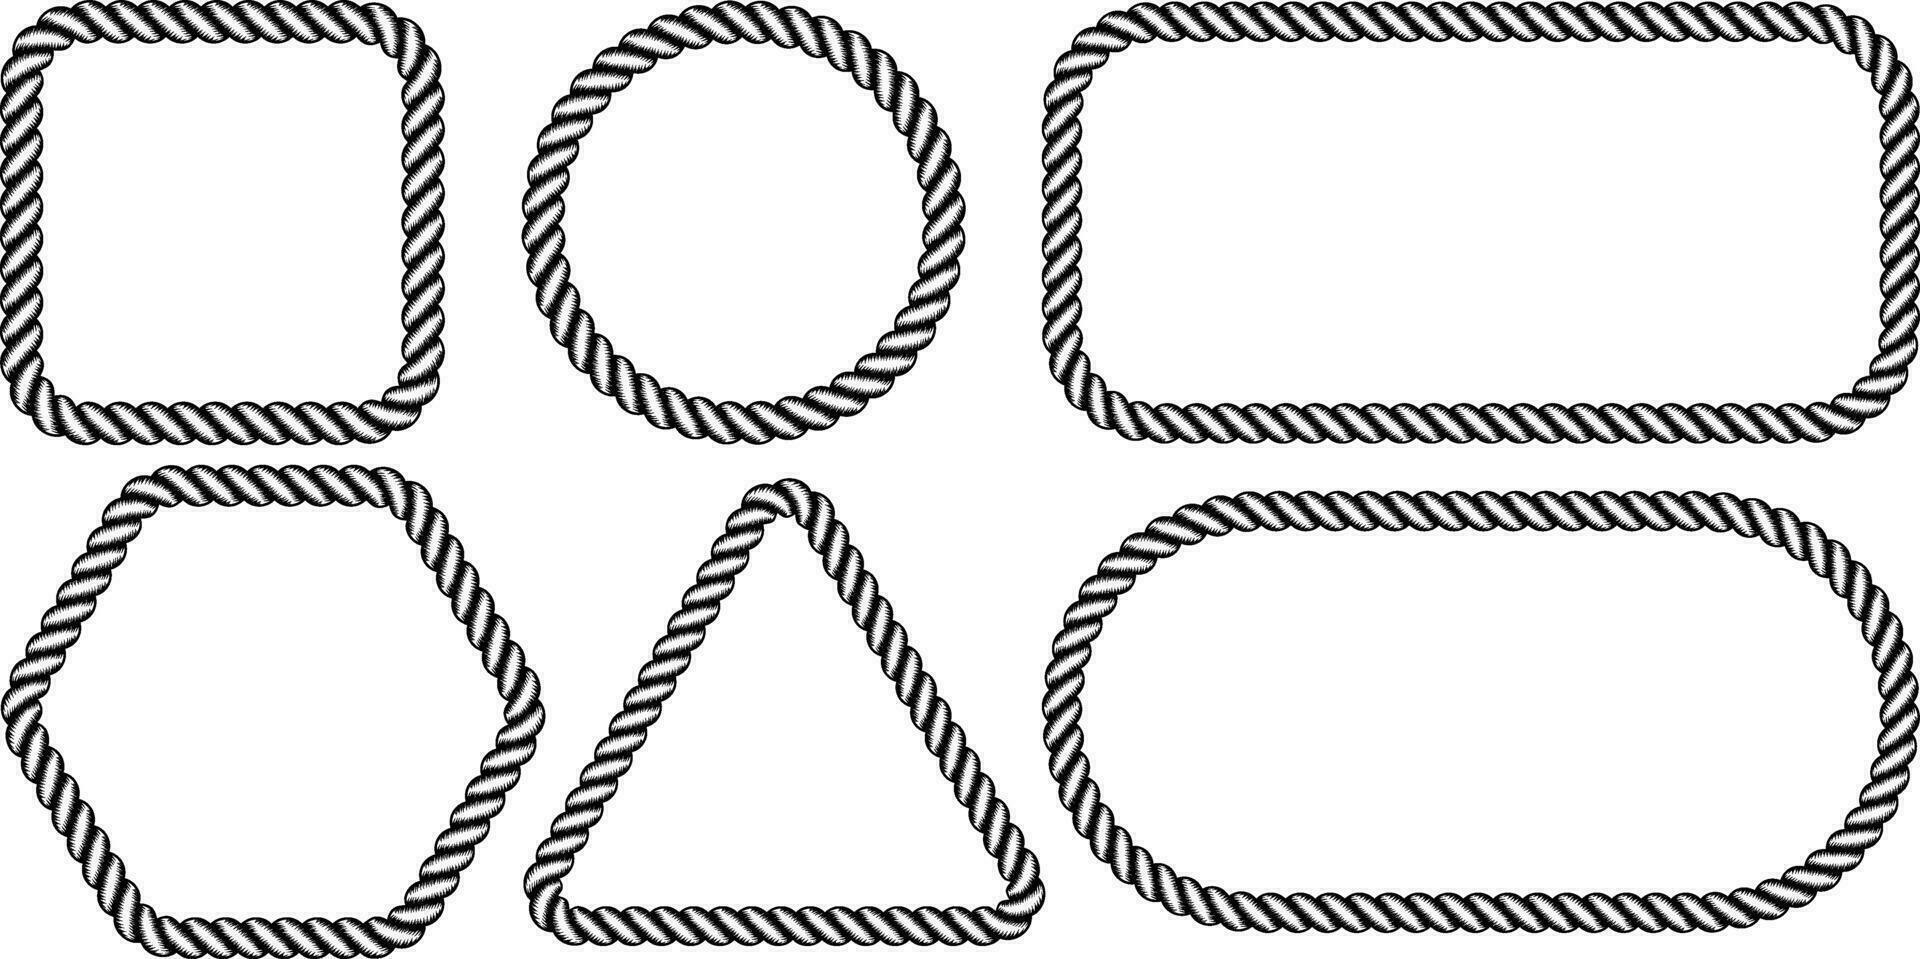 schwarz Weiß Grunge Seil Rahmen einstellen vektor